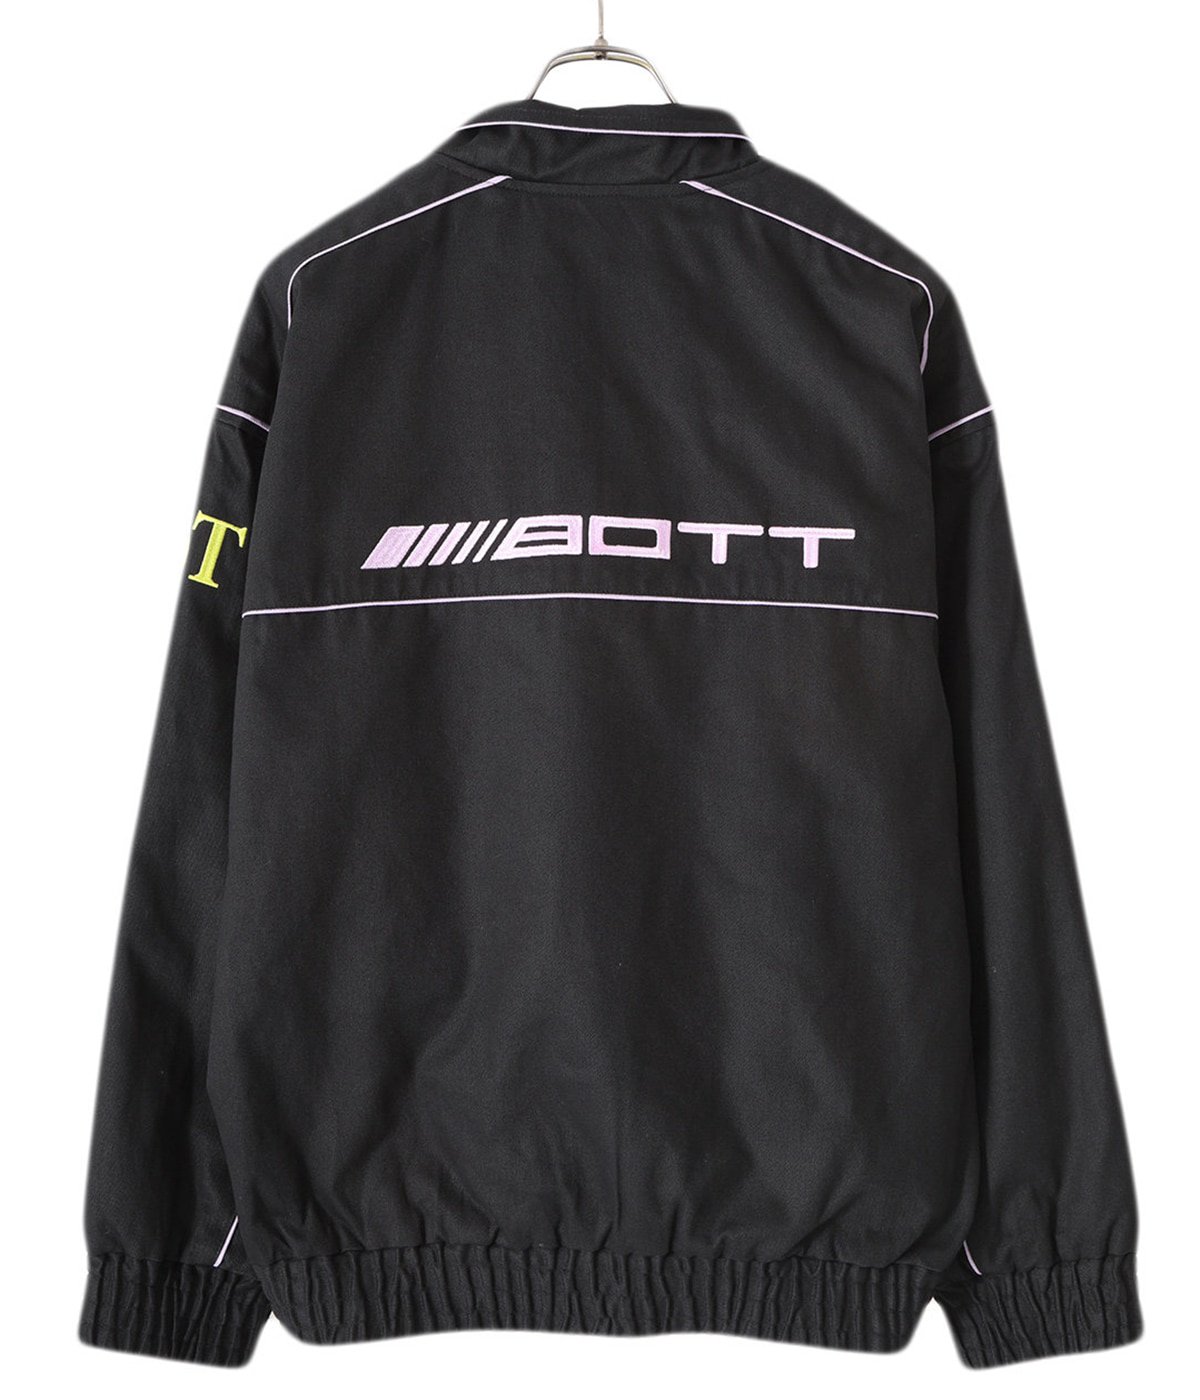 Cotton Racing Jacket | BOTT(ボット) / アウター ブルゾン 